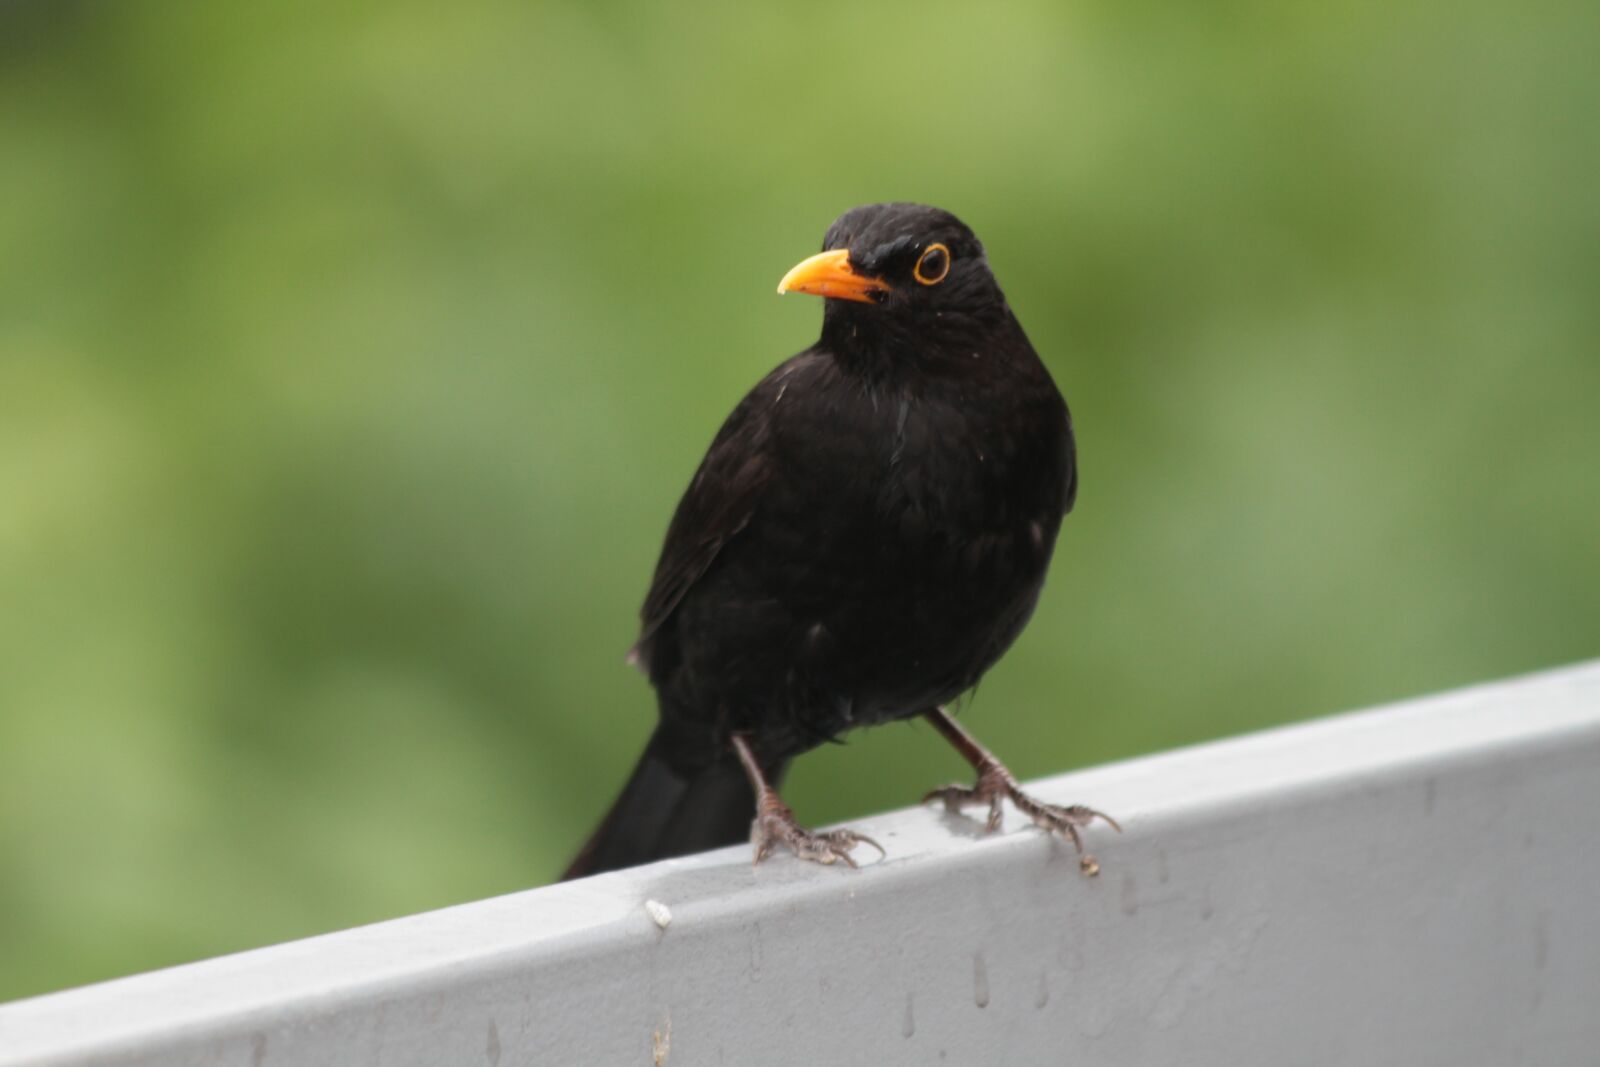 Canon EOS 7D sample photo. Bird, blackbird, songbird photography